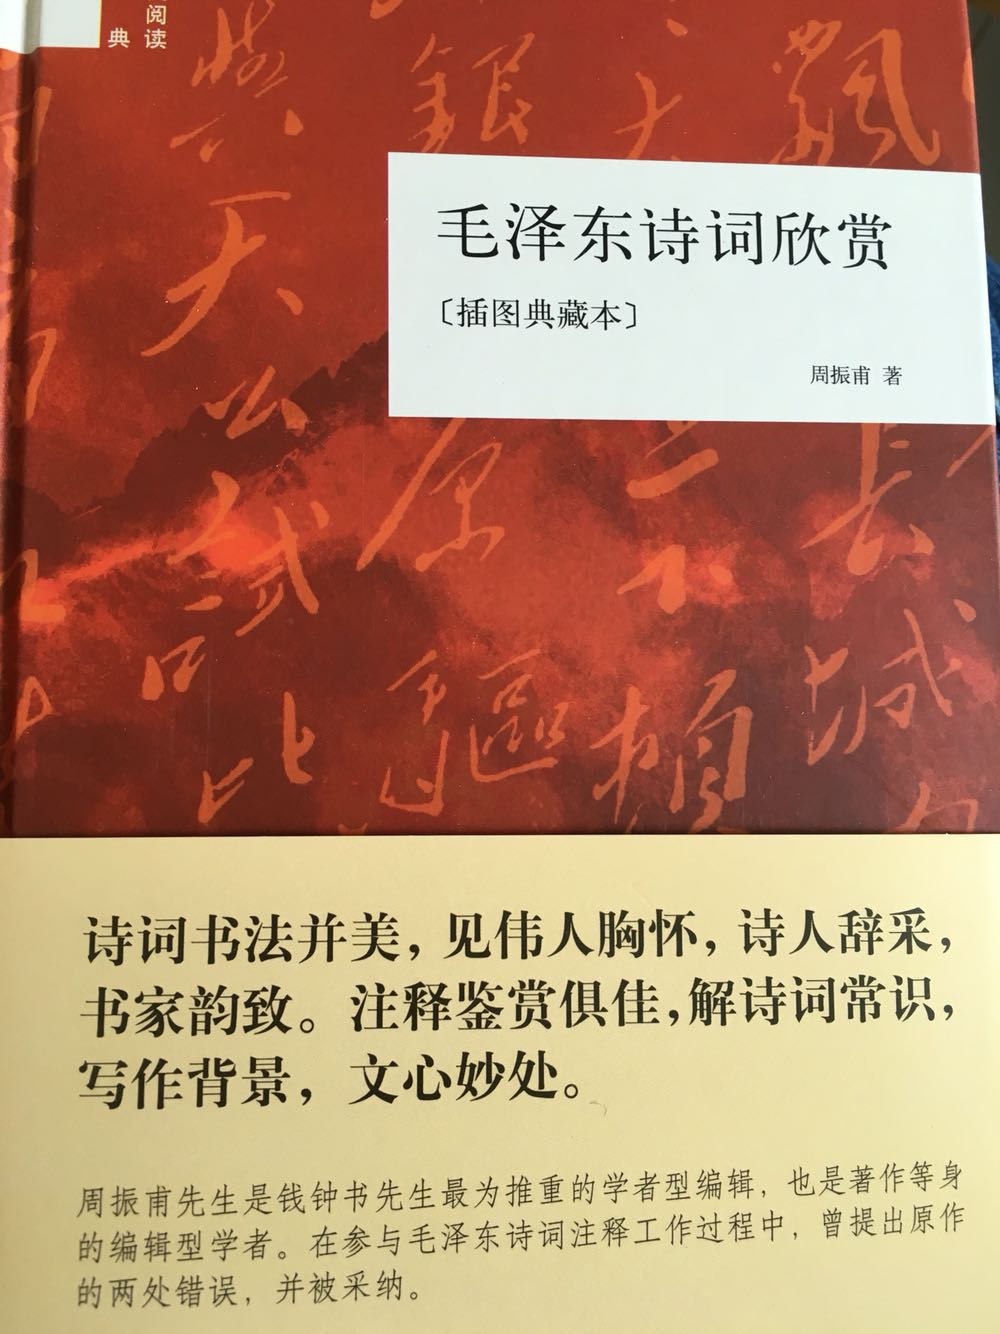 包装精美，里面不仅有诗词还有写作背景的相关介绍更有很多毛泽东的书法作品欣赏夹在其中很好